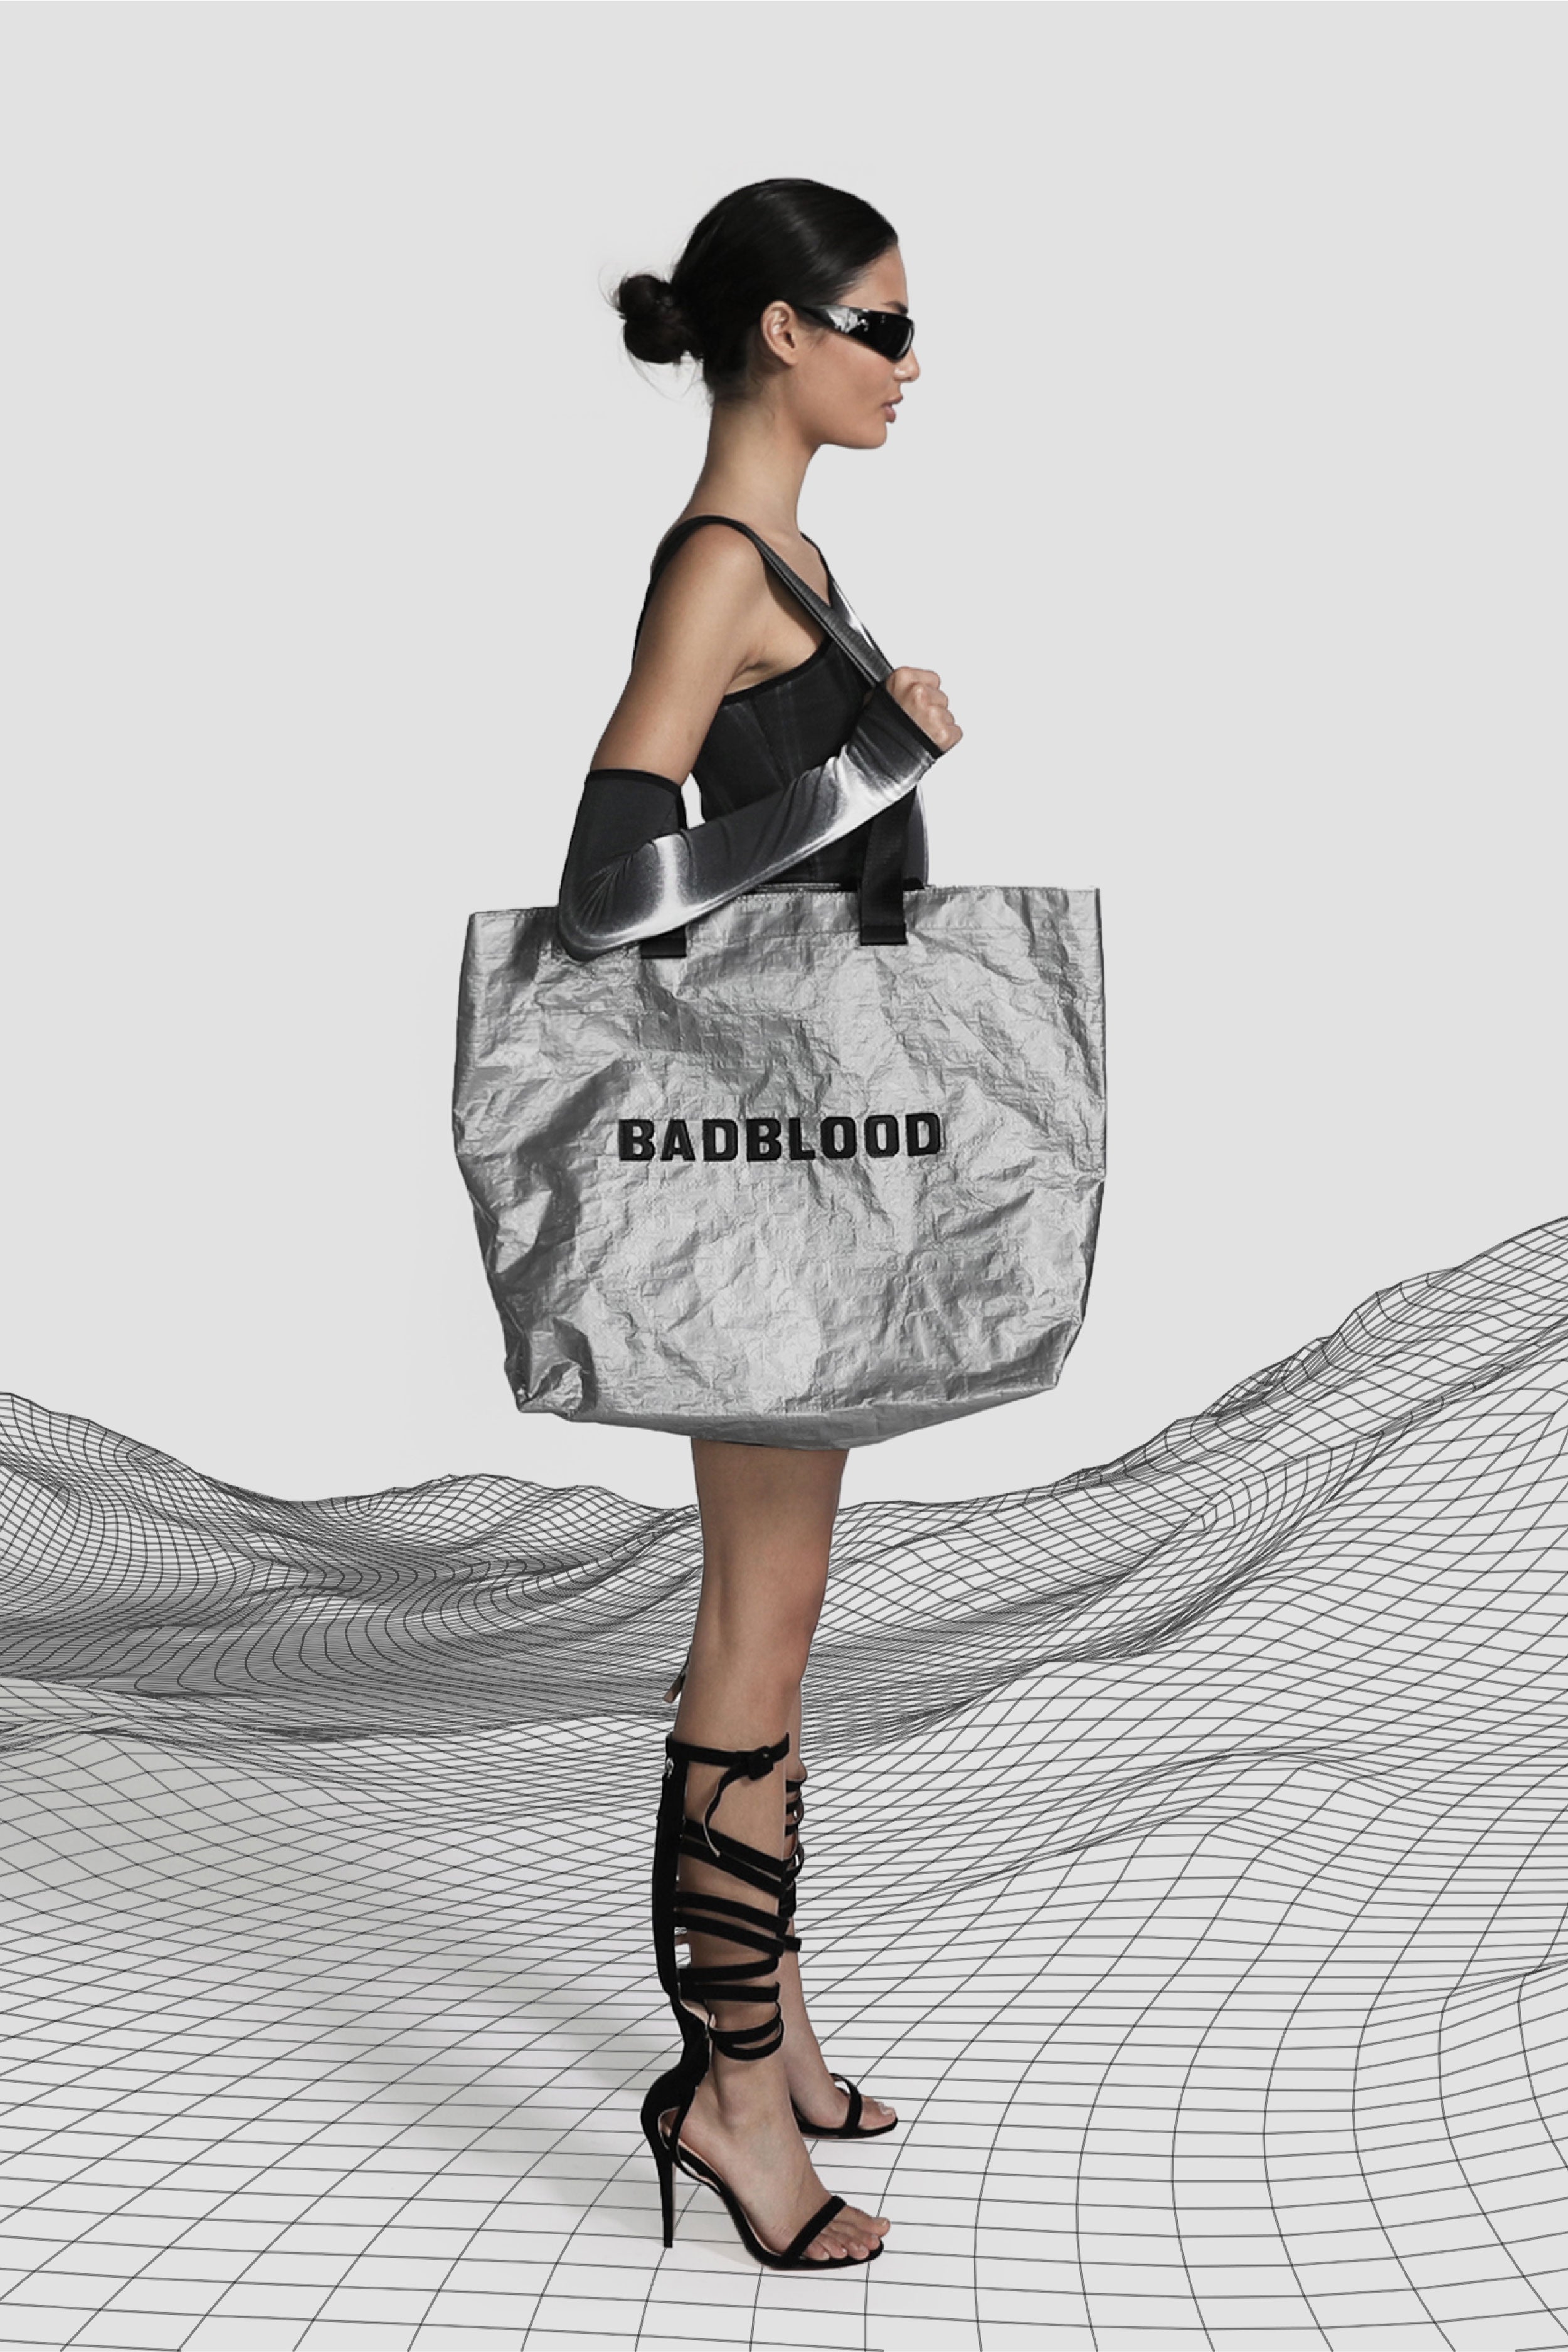 Badblood Shopper Large Bag Silver